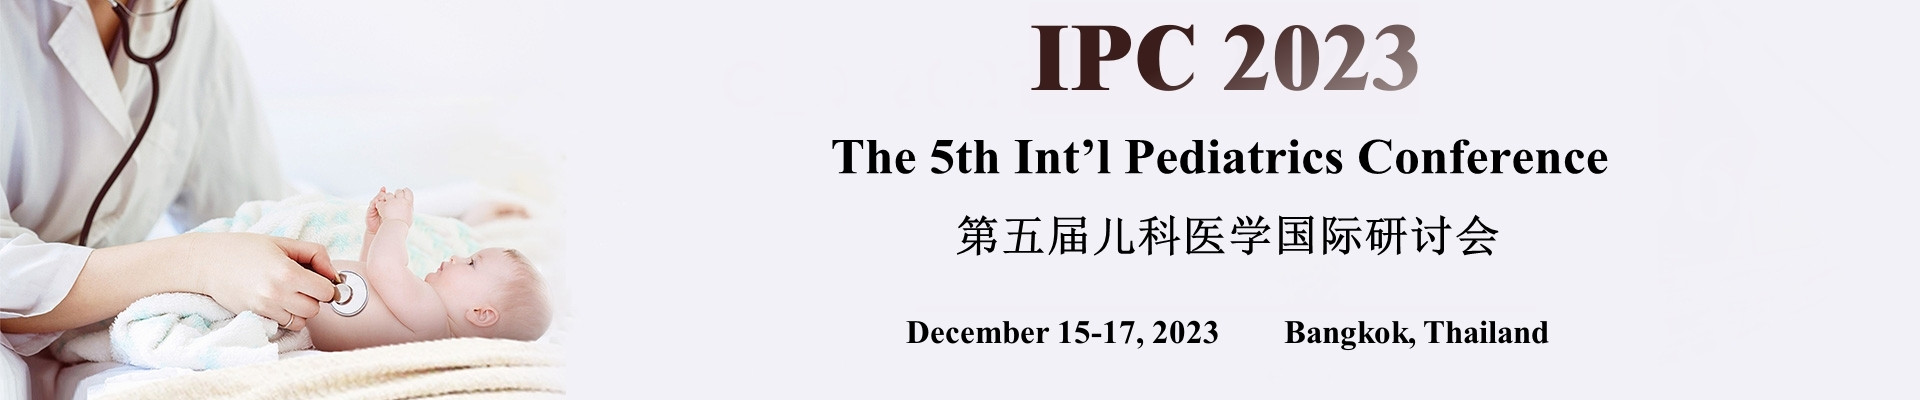 第五届儿科医学国际研讨会(IPC 2023)